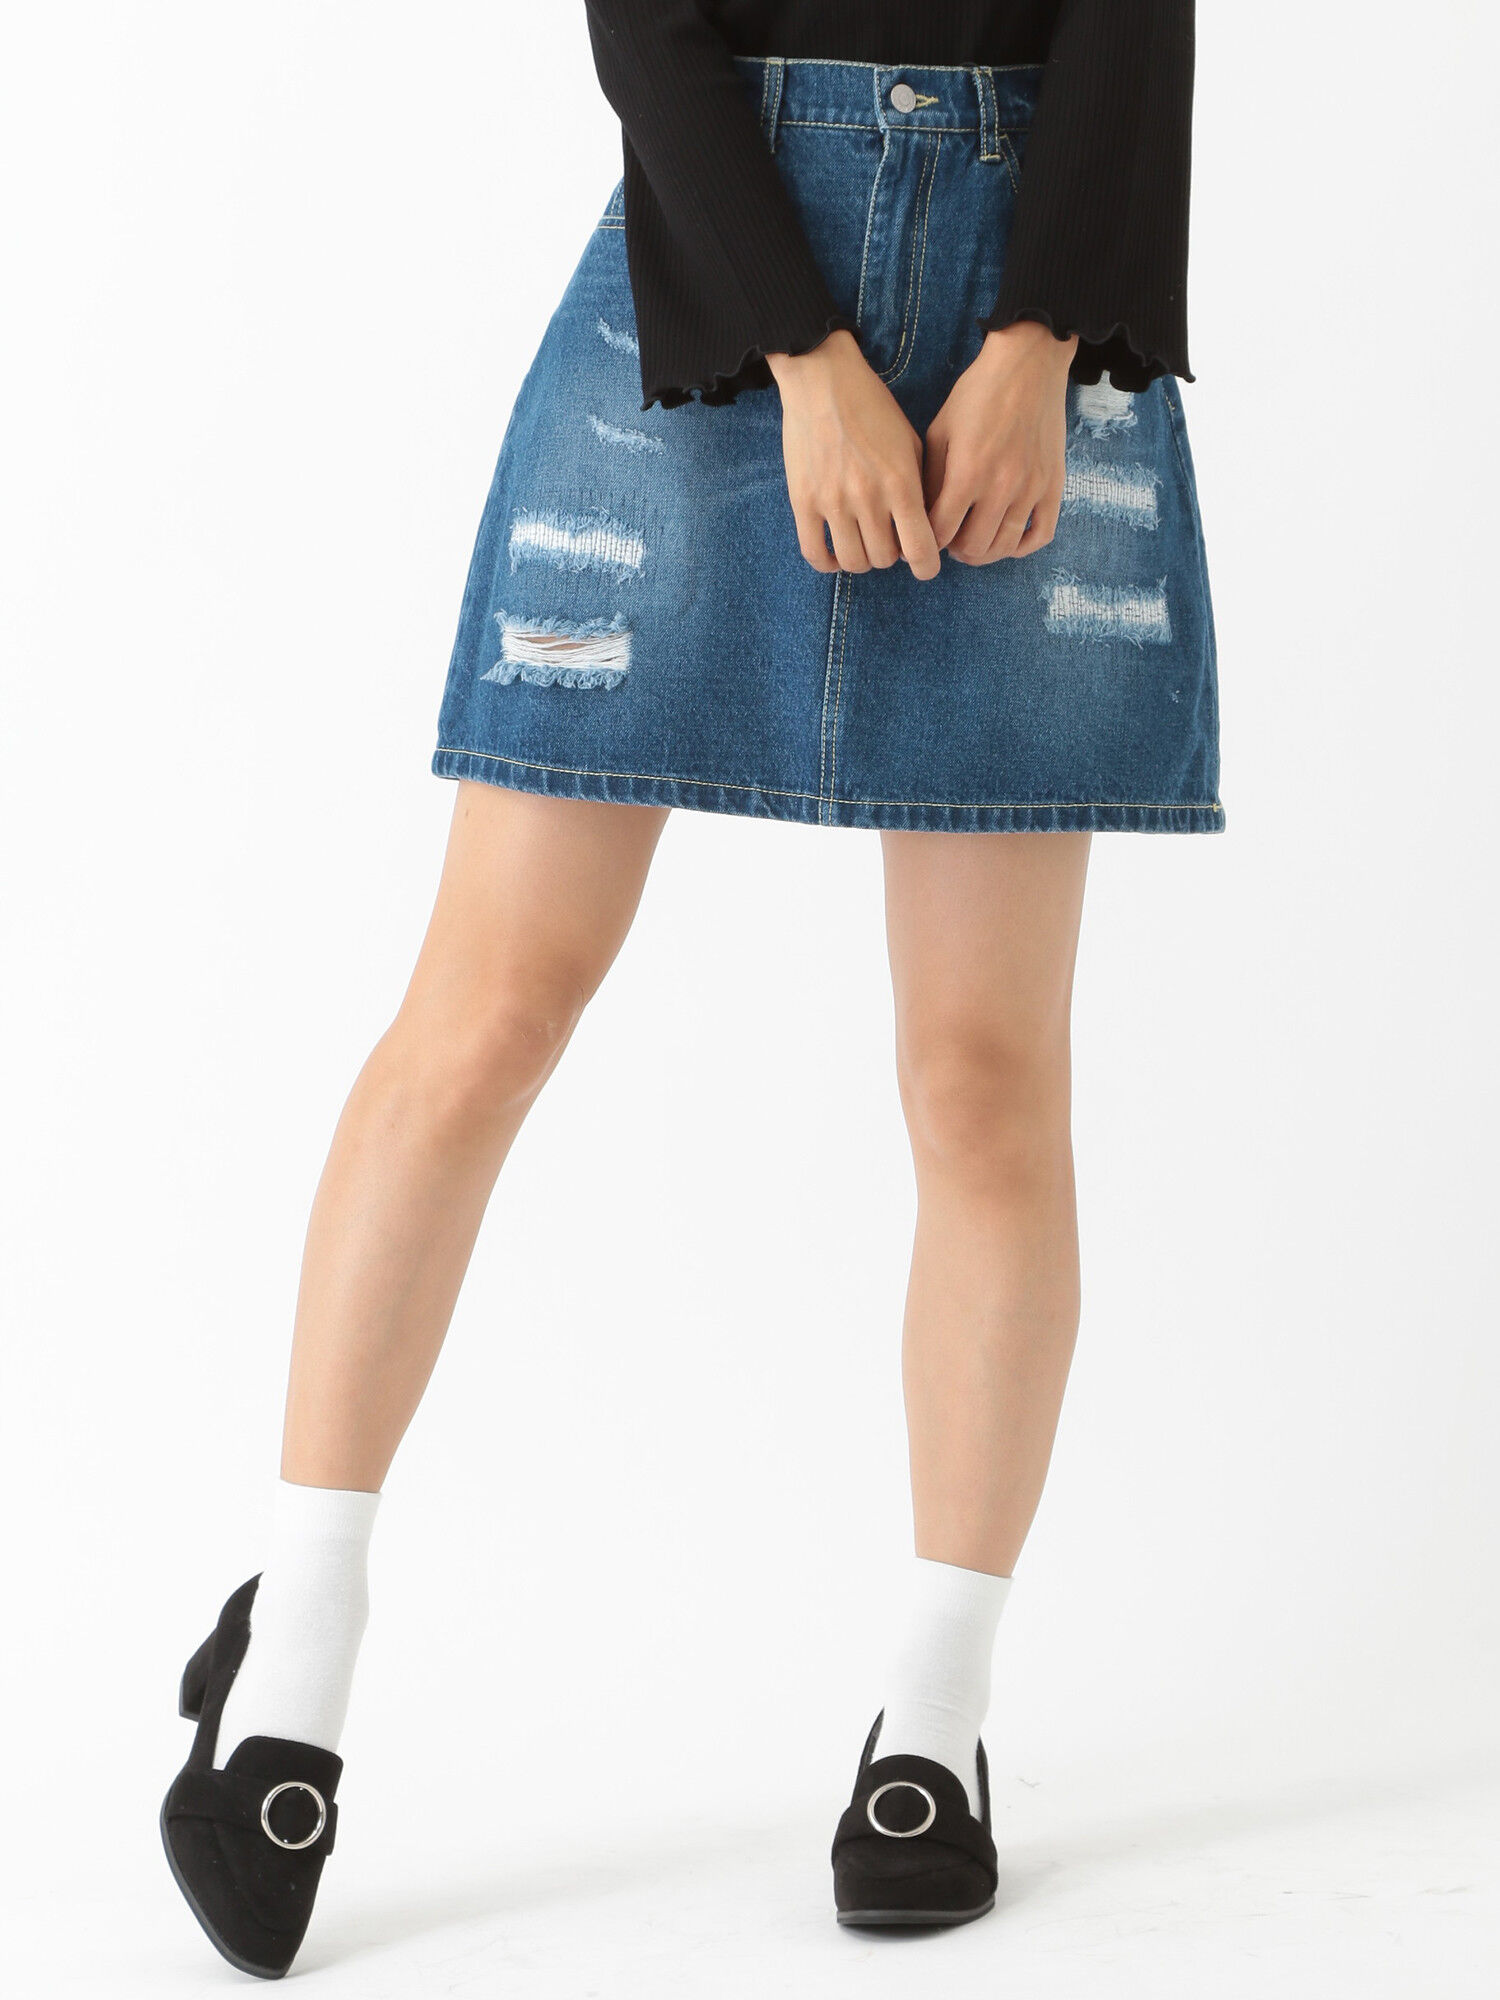 ダメージ加工デニムスカート も定額で借りホーダイのファッションレンタルアプリmechakari